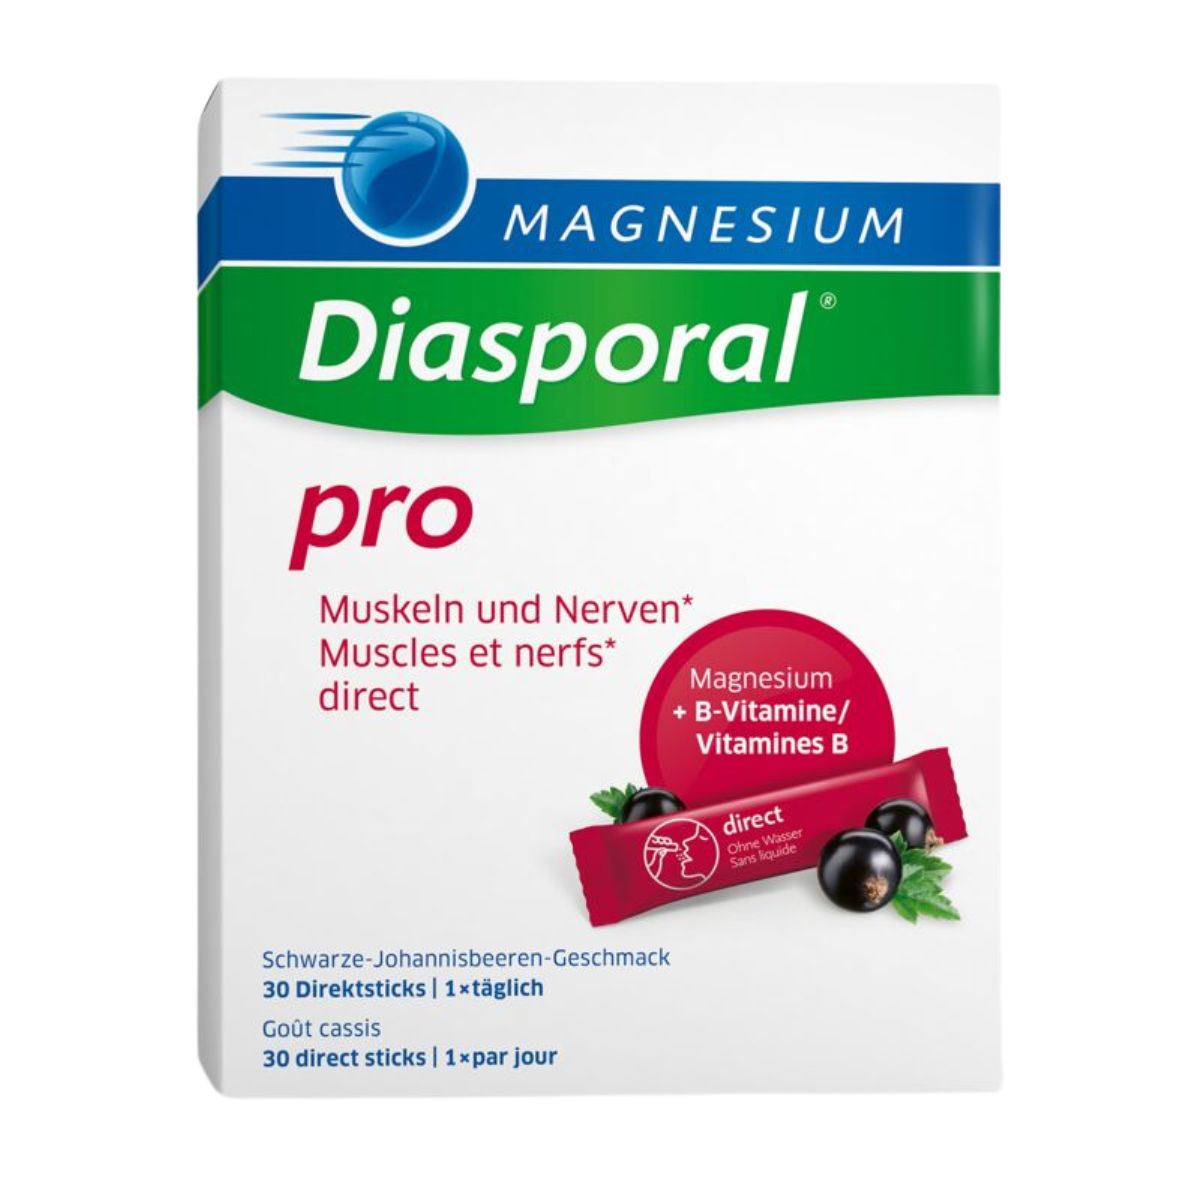 Magnesium Diasporal Pro M+N Sticks 30 Stück